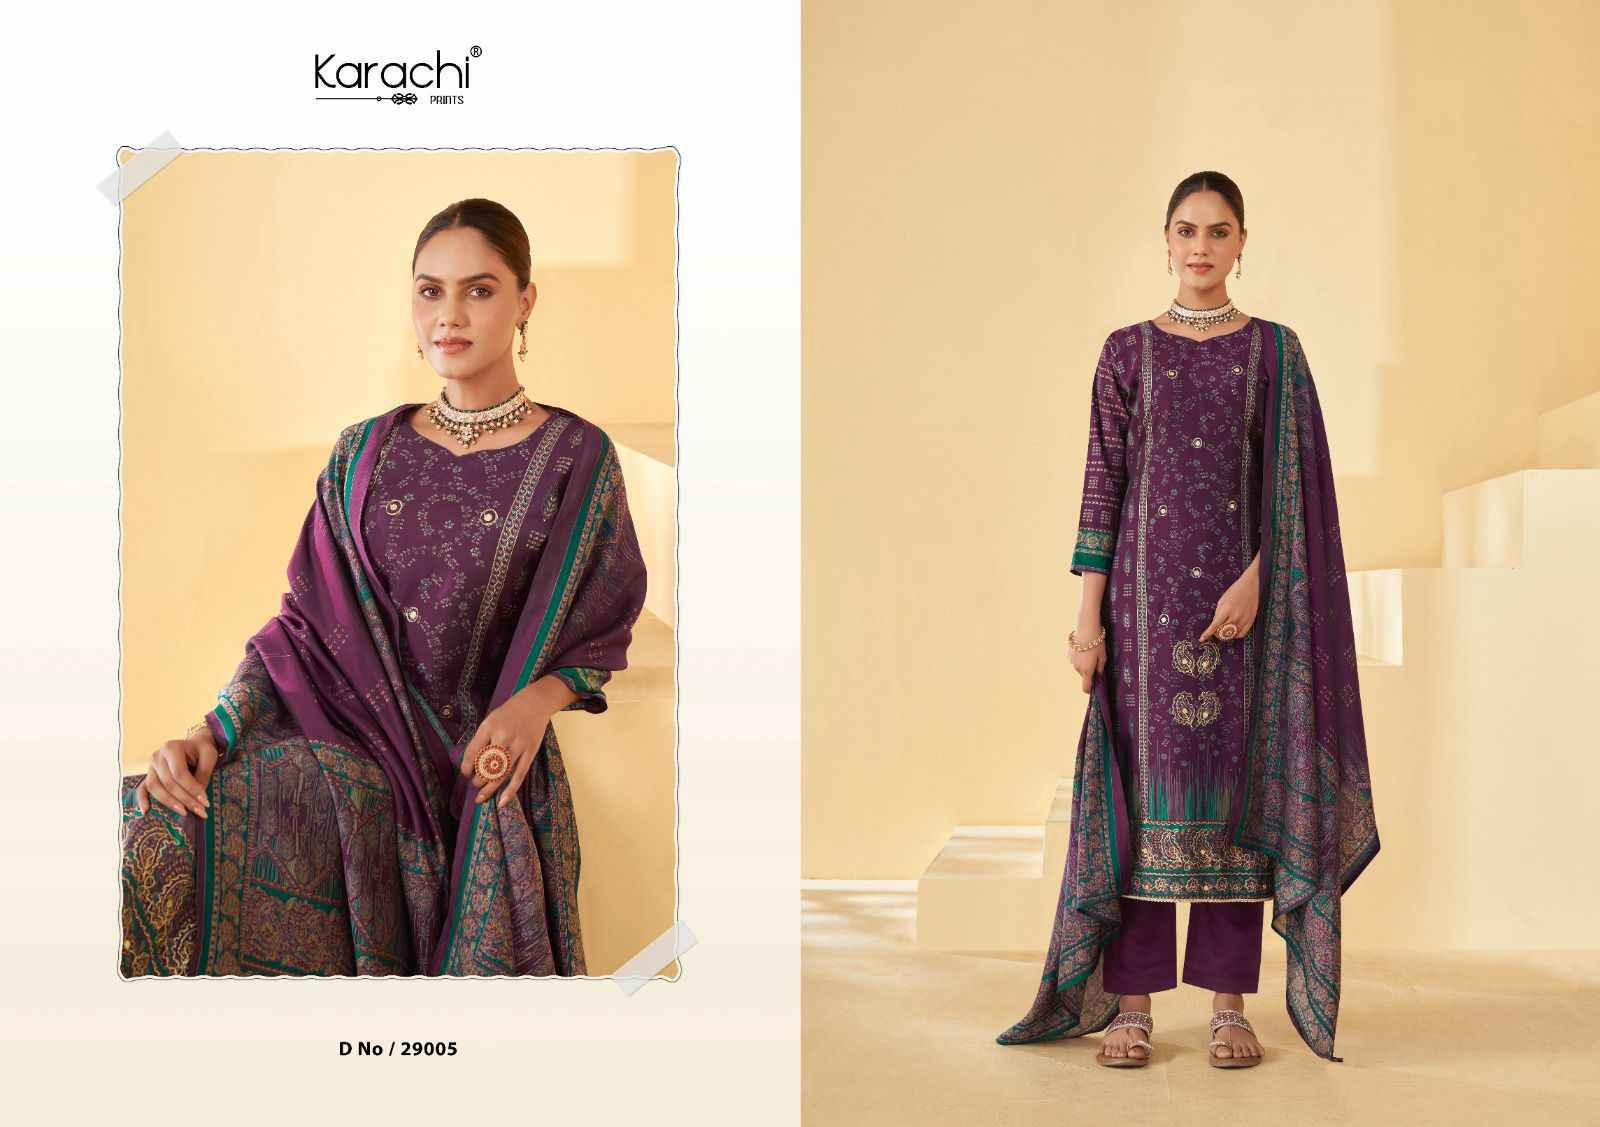 Kesar Karachi Prints Raahi Pure Muslin Dress Material (8  pc Cataloge)